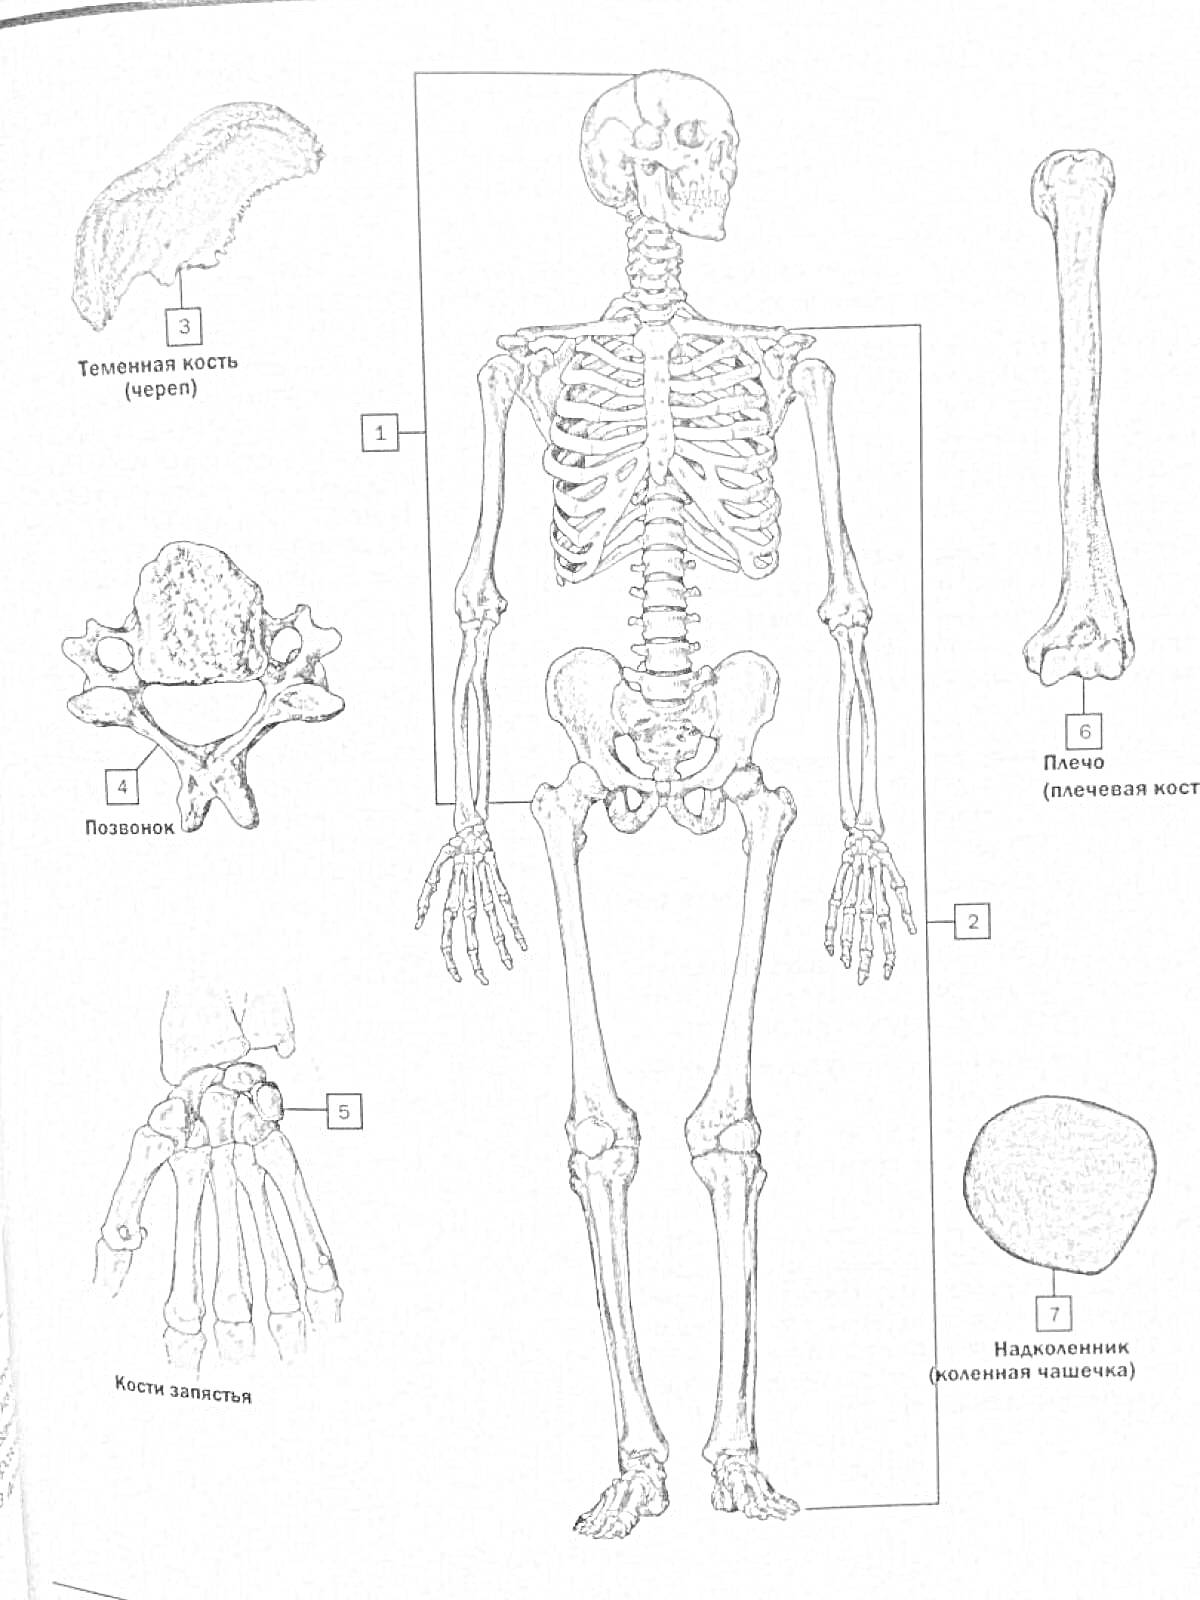 Атлас анатомии Неттера - Тазовая кость, Лопатка, Поясничный позвонок, Кости запястья, Плечевая кость, Надколенник, Скелет человека